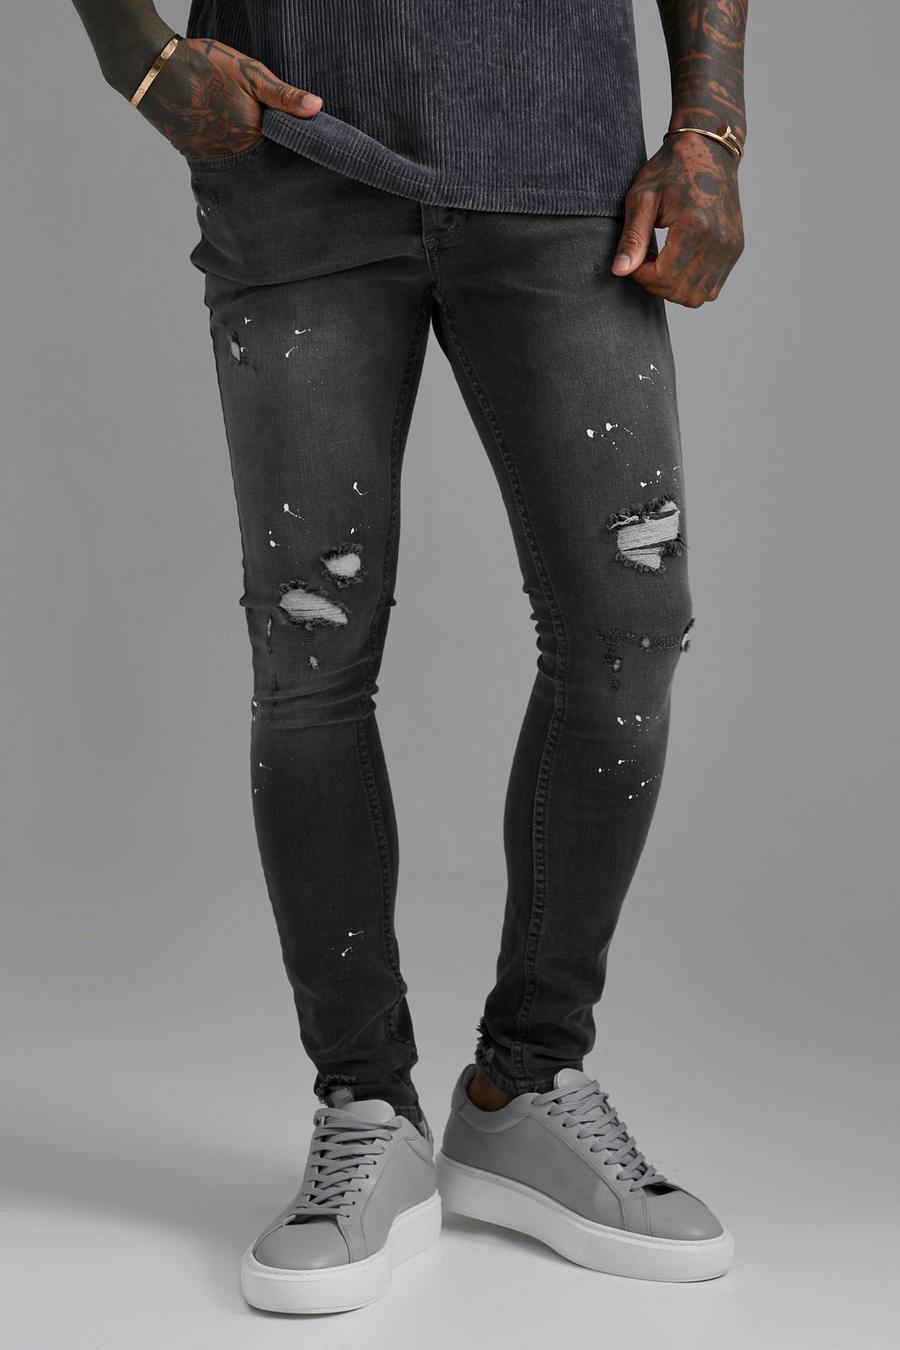 Super Skinny Ripped Paint Splatter Jeans